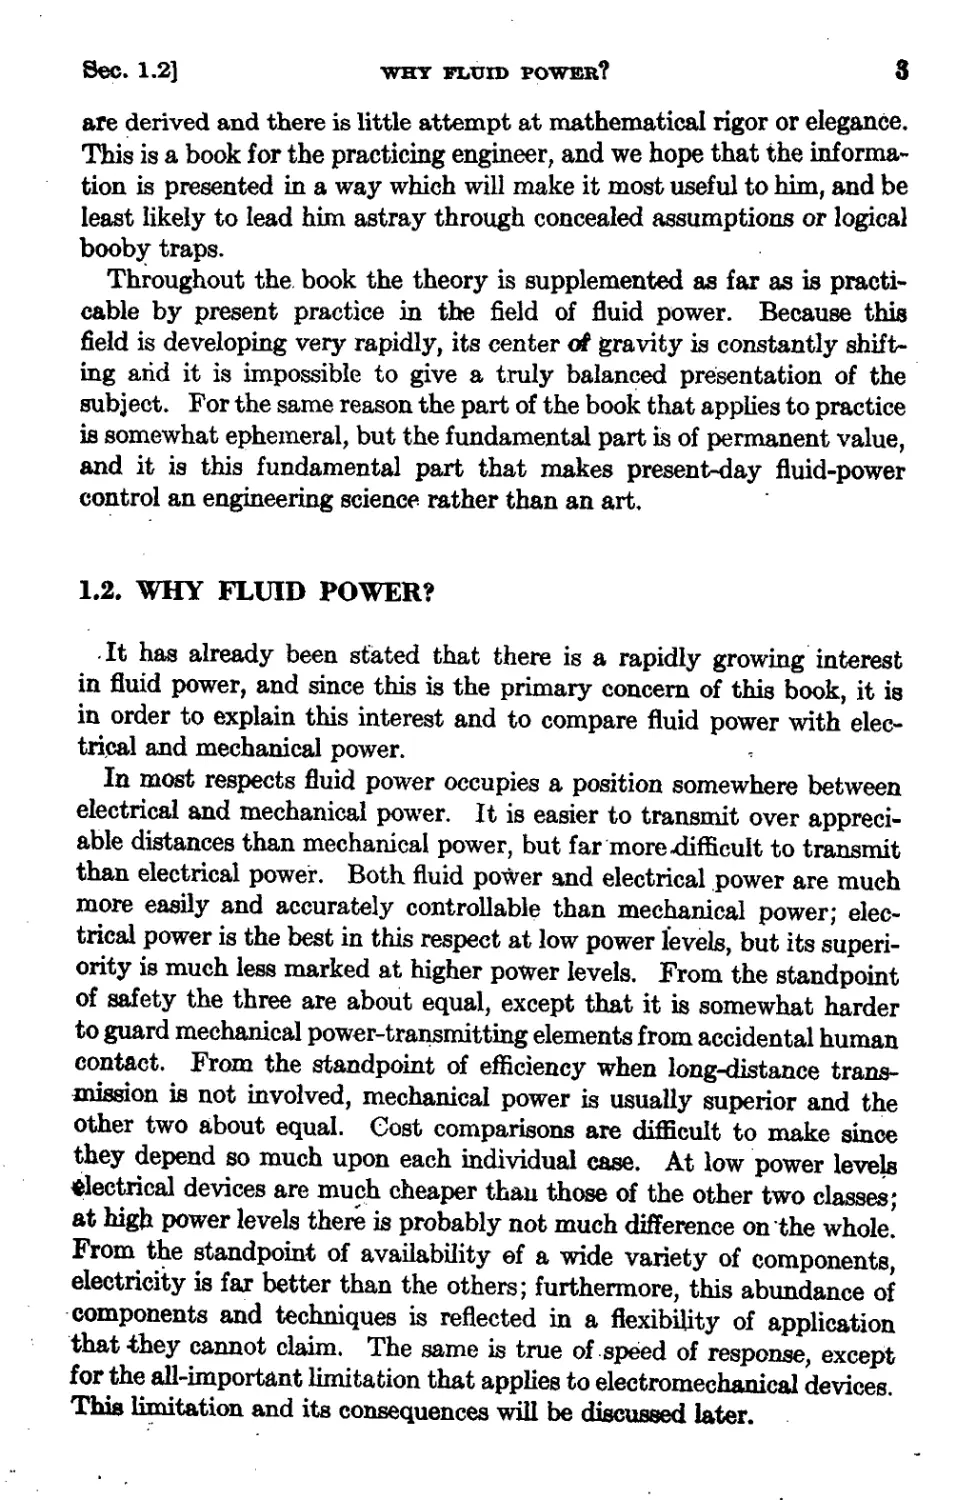 1.2 Why Fluid Power?